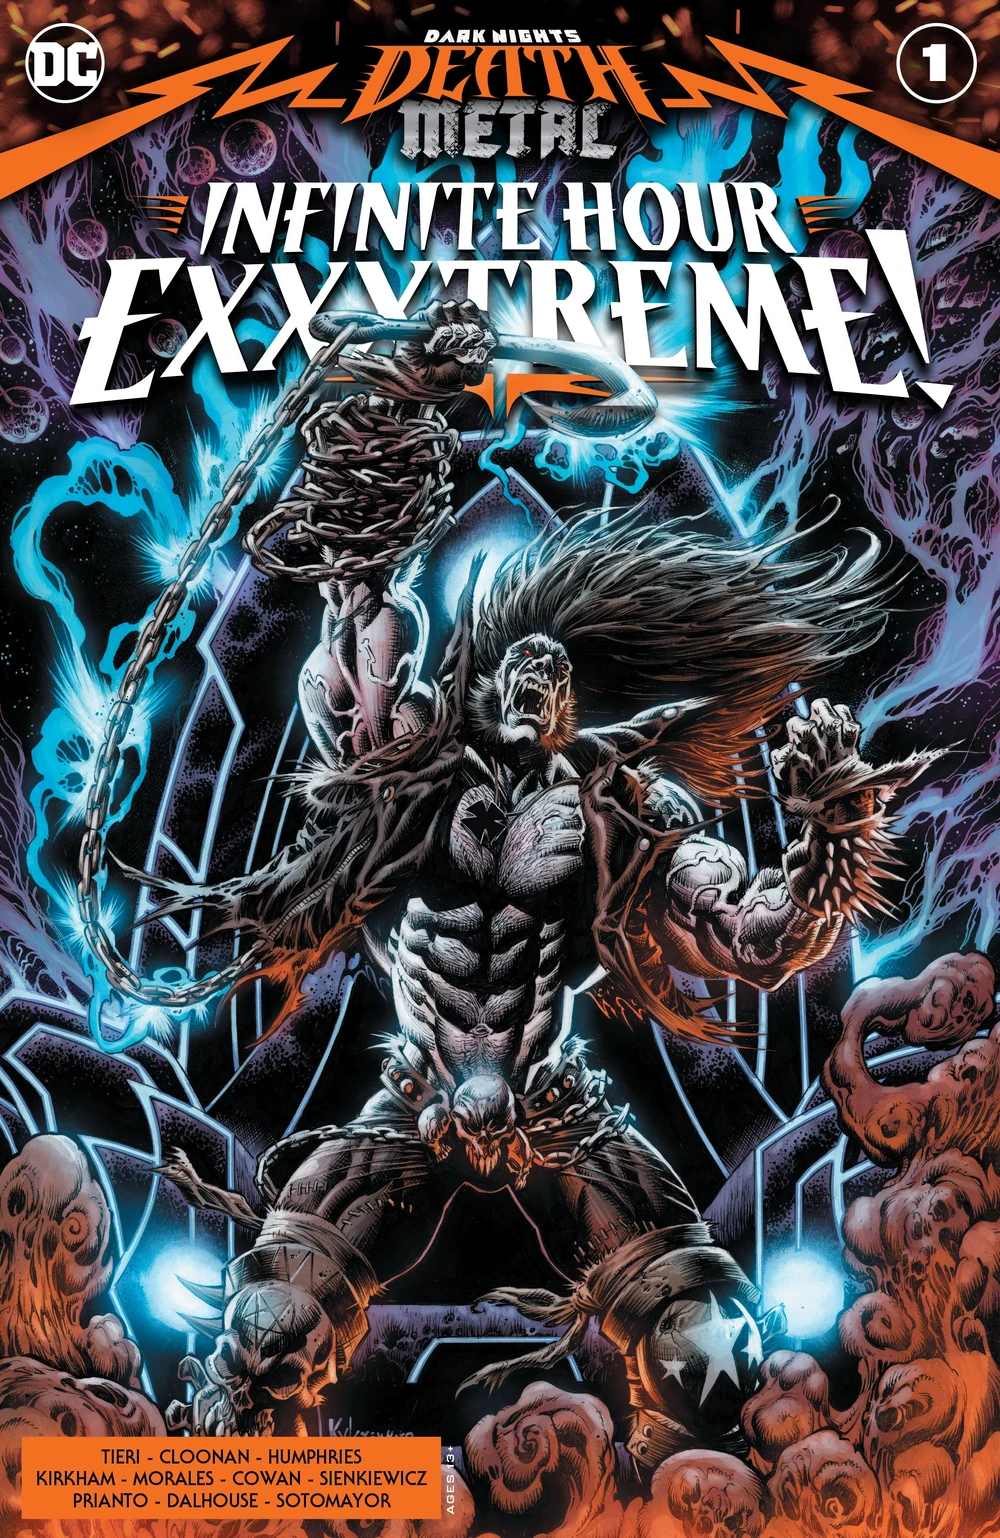 Portada de  Dark Nights: Death Metal: Infinite Hour Exxxtreme!  en la que vemos a Lobo como en una portada de Heavy, sujetando un gancho al final de unas enormes cadenas de metal. 